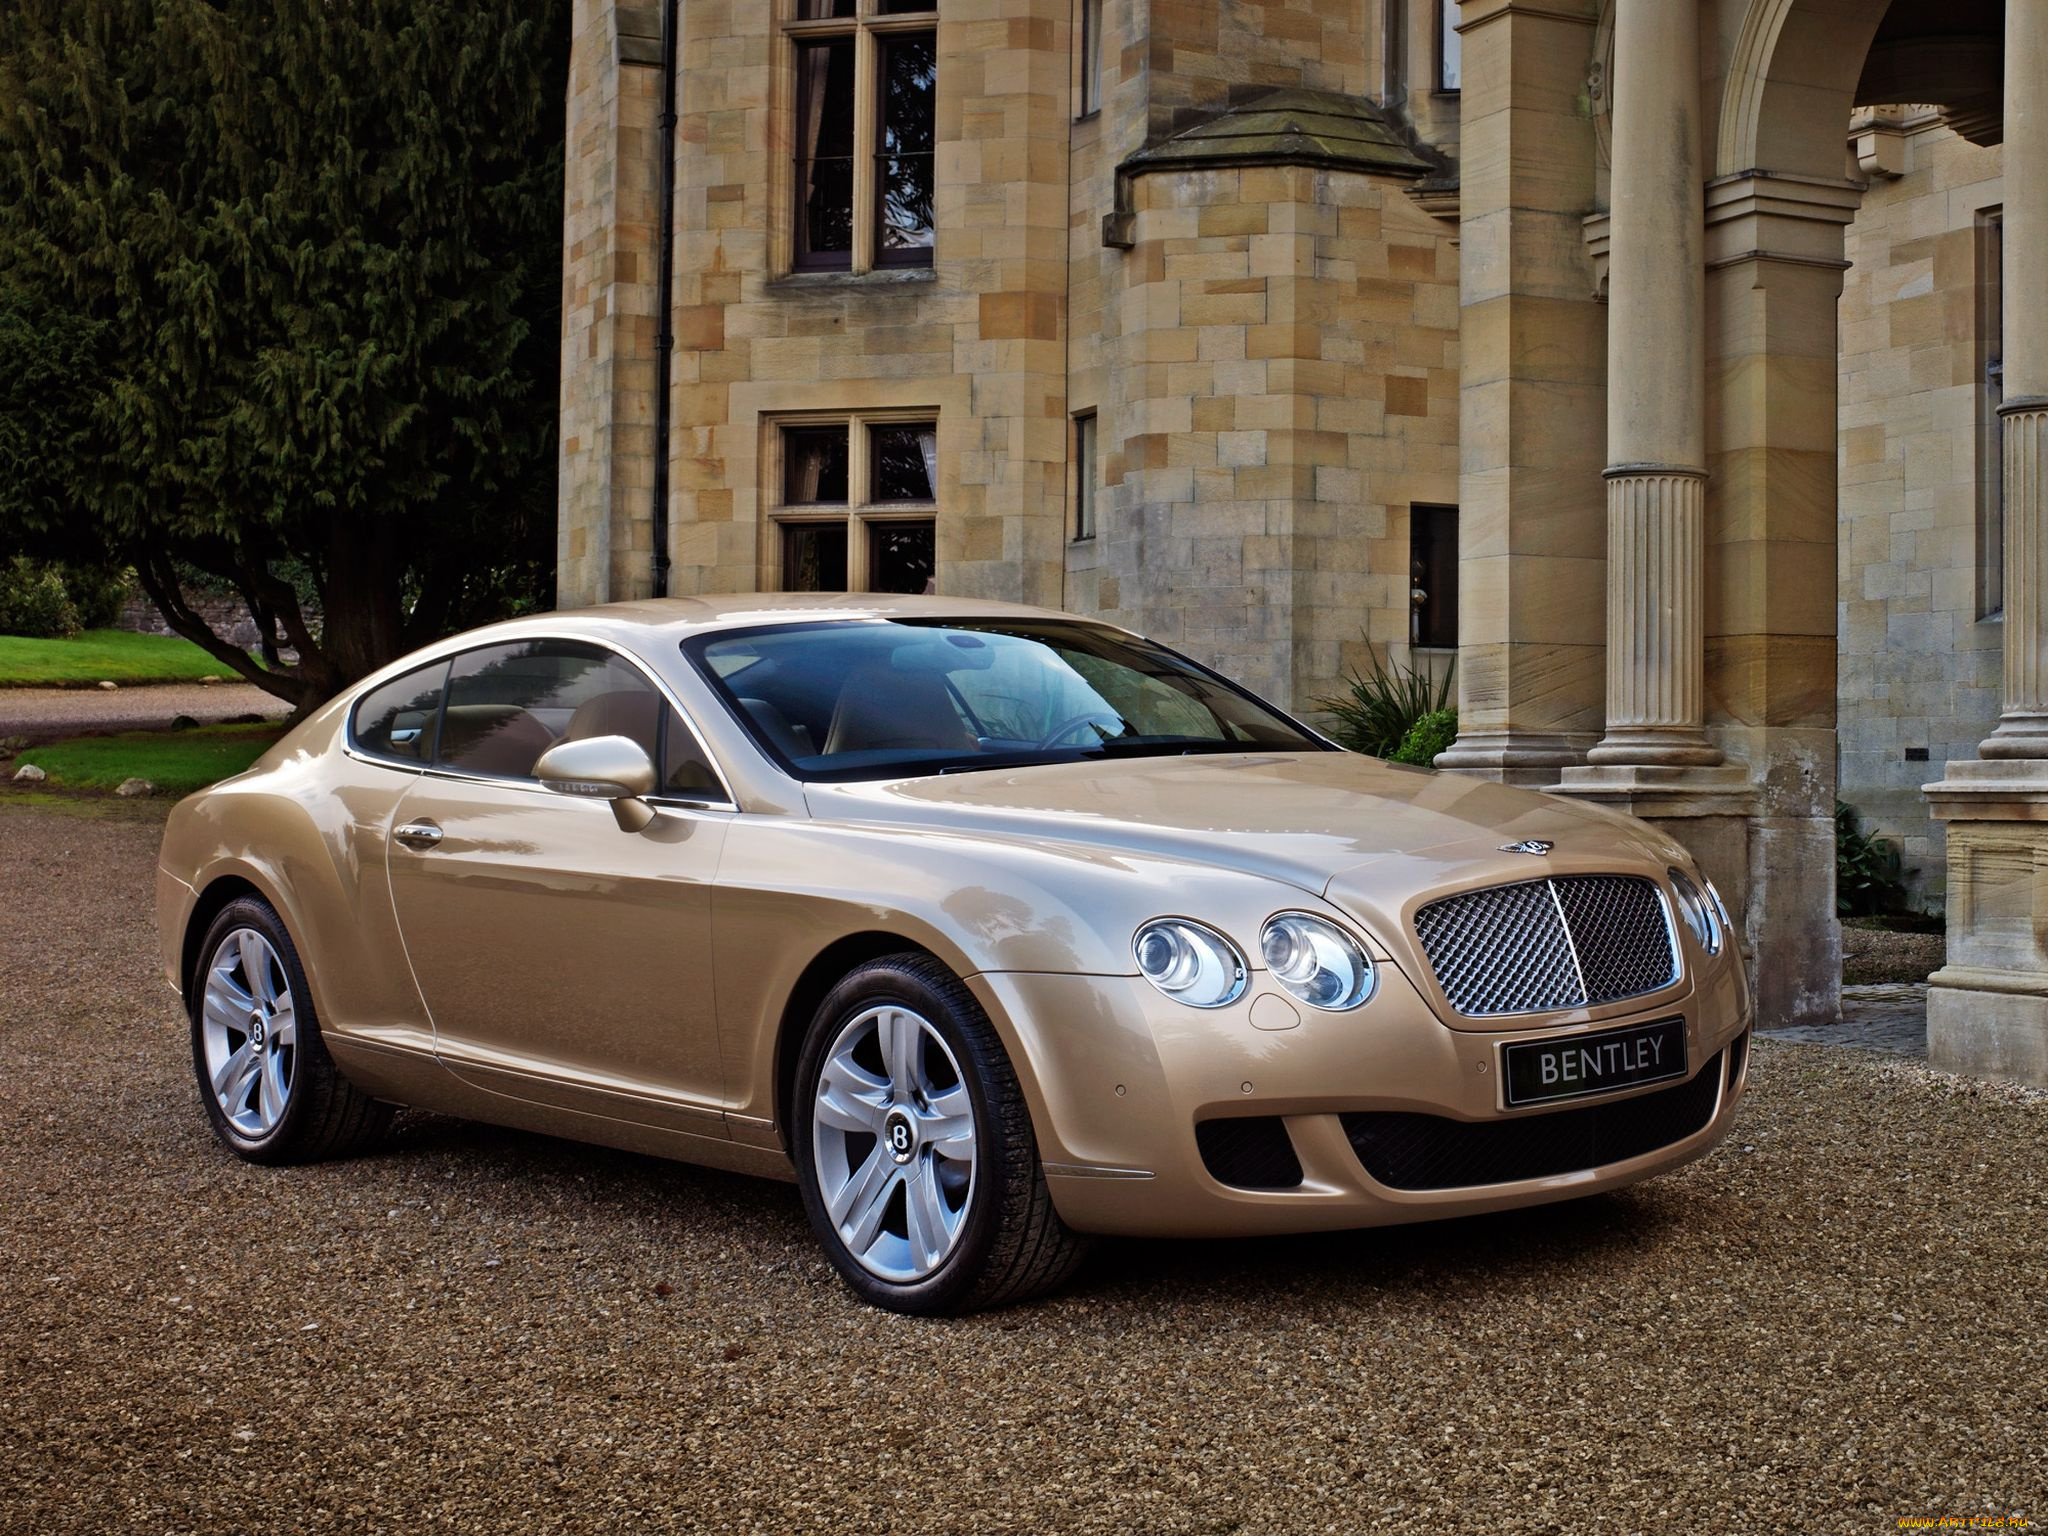 Название дорогой машины. Бентли Континенталь 2007. Бентли Континенталь золотой. Bentley Continental gt 2007. Бентли Континенталь gt бежевый.